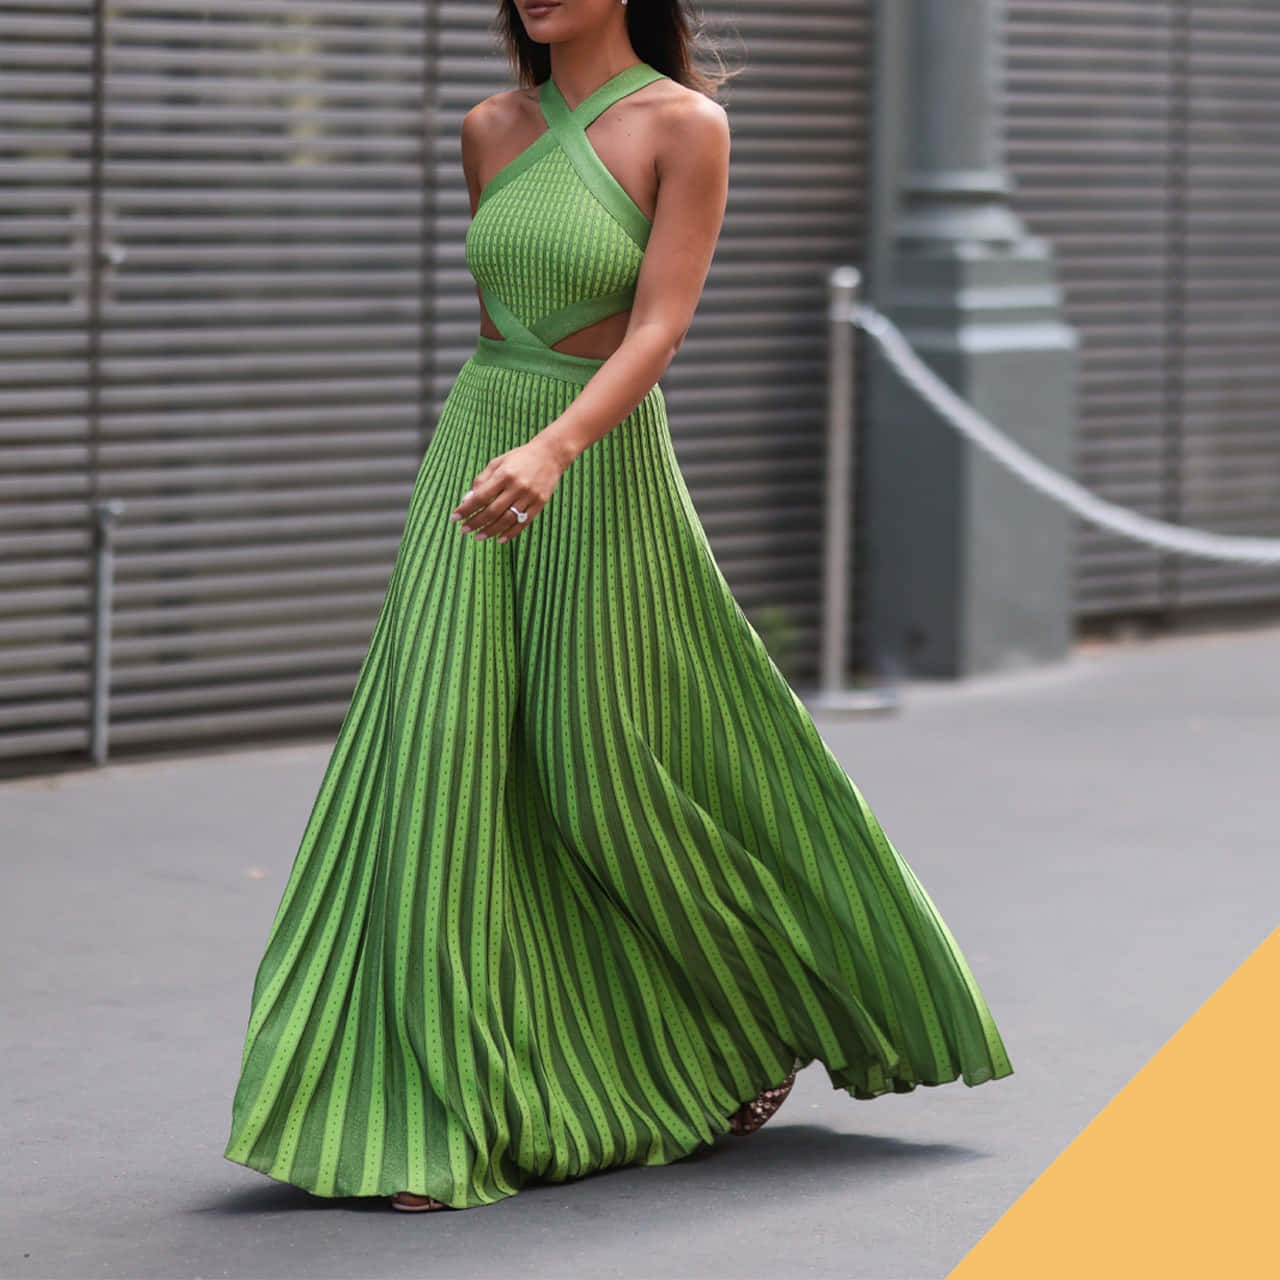 Imagendel Modelo En Un Vestido Largo Plisado De Color Amarillo-verde.